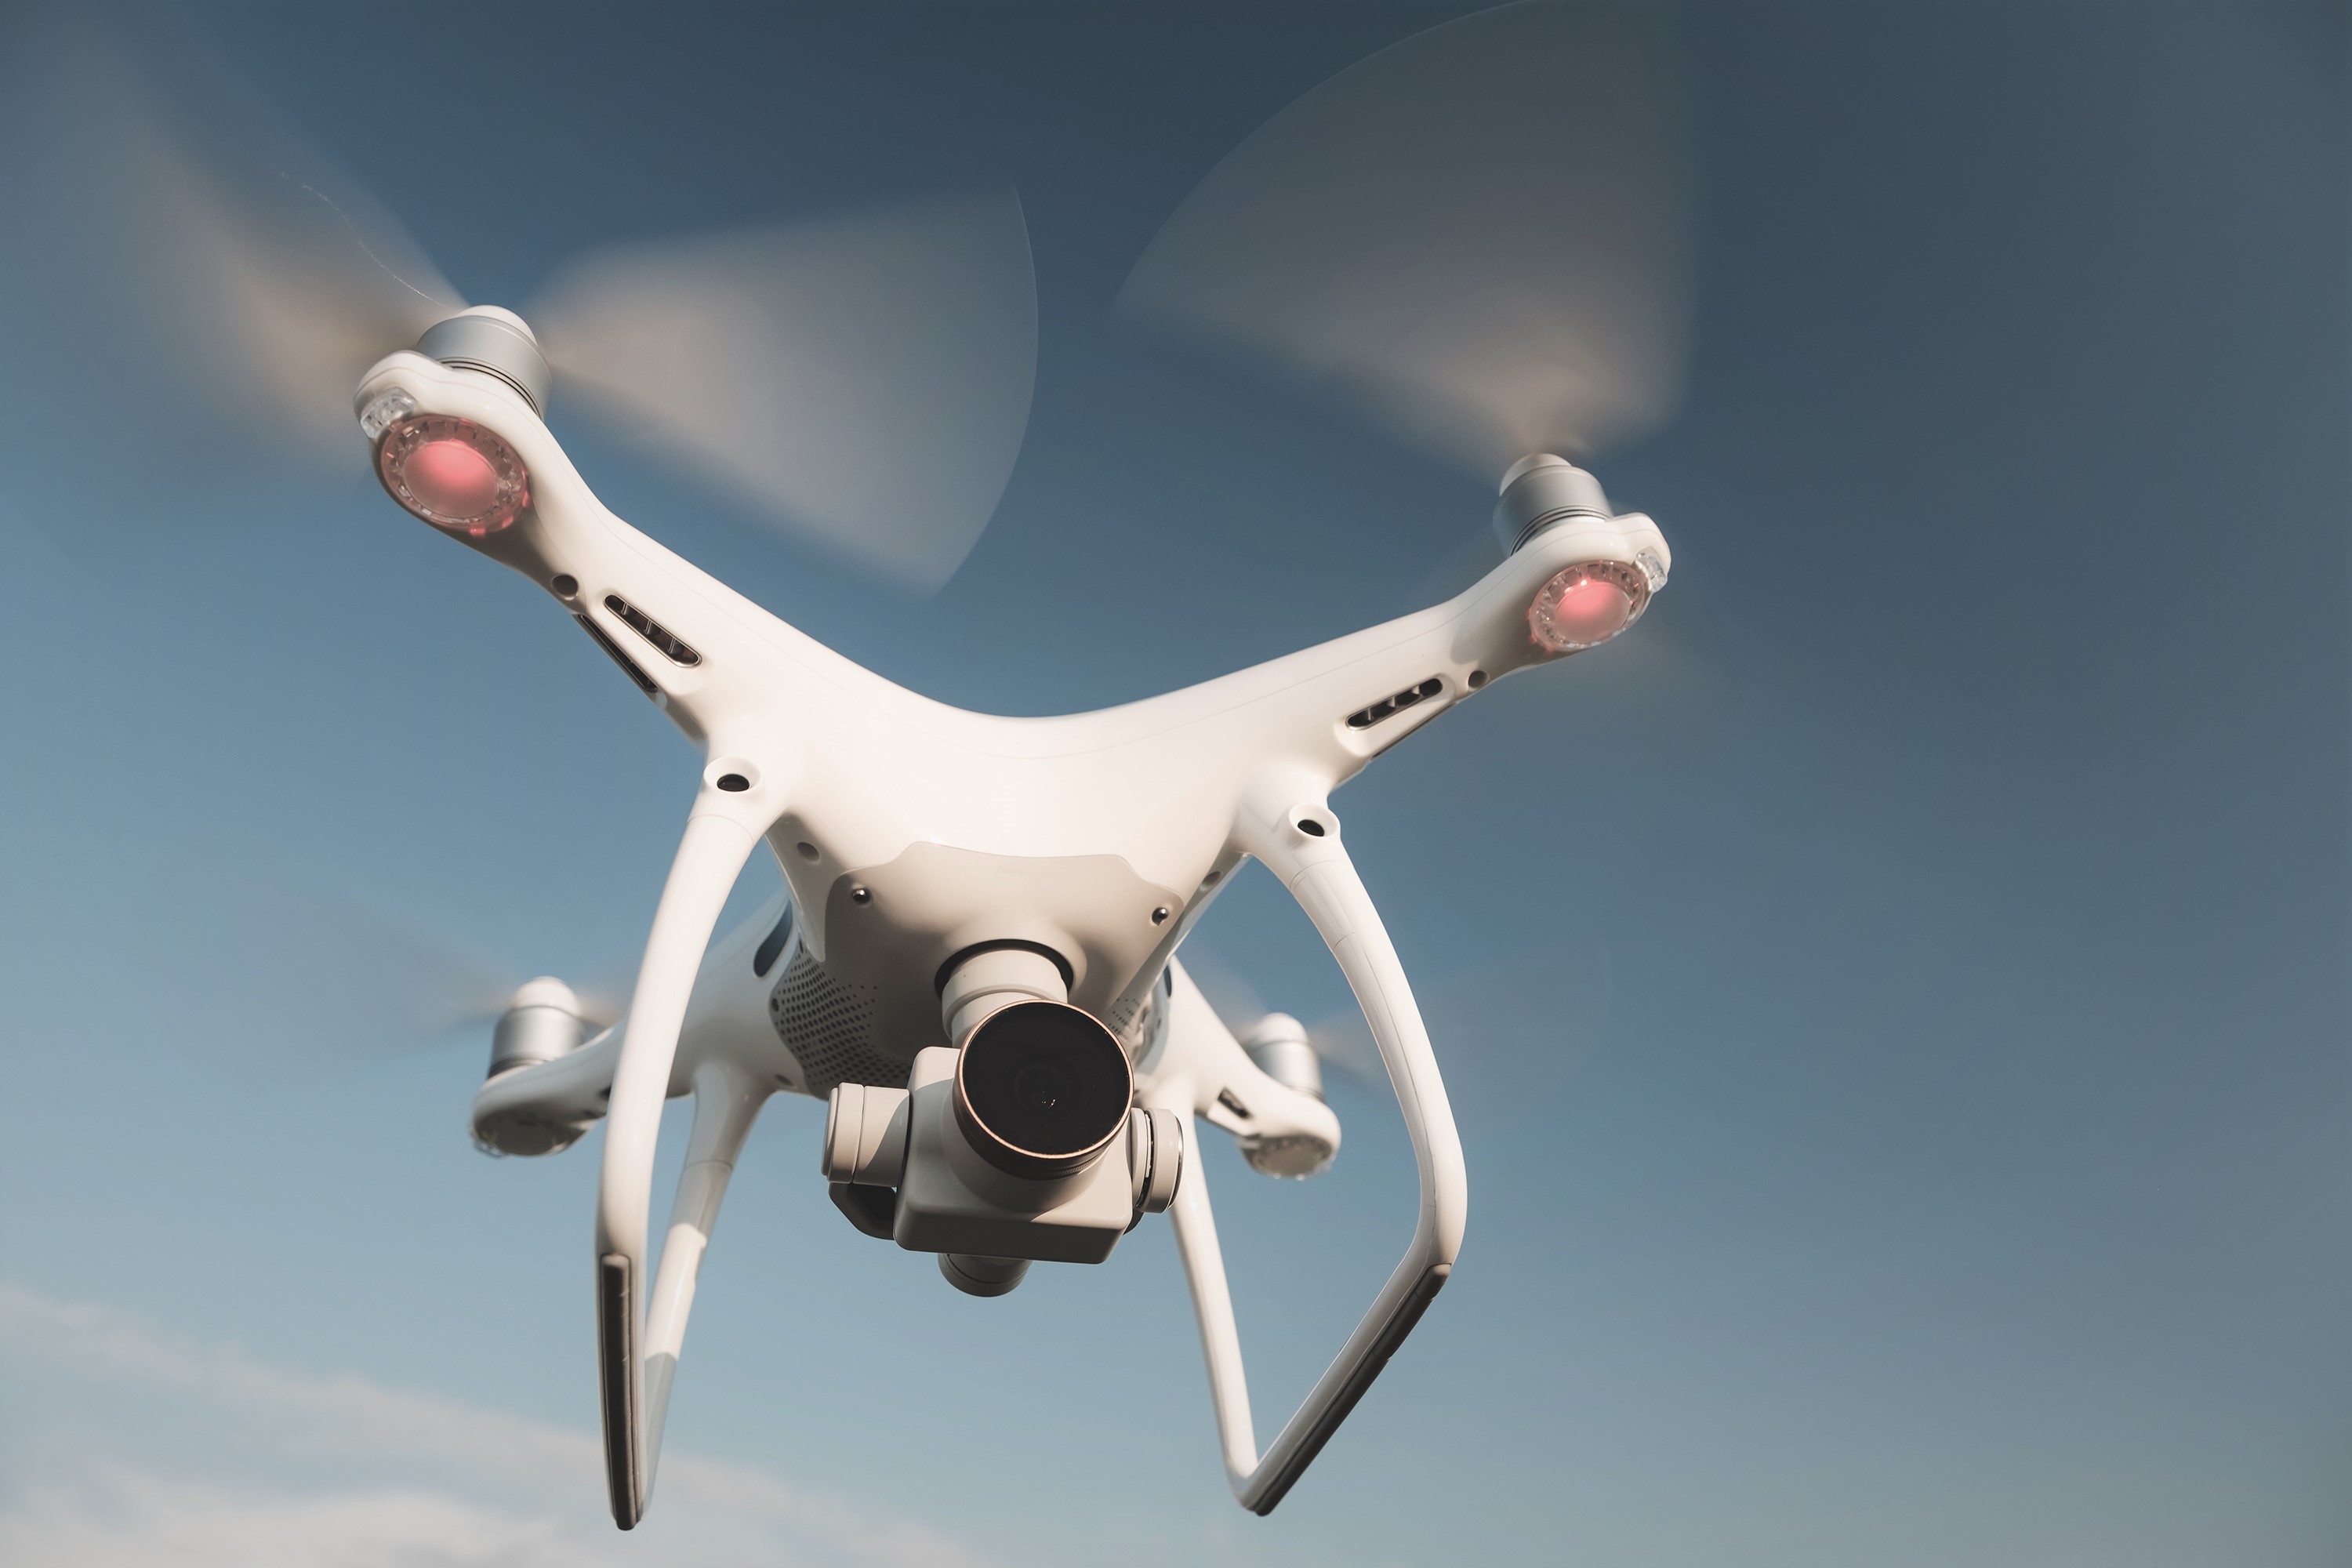 Реализована видеосъемка дронами-квадрокоптерами с целью контроля взрывных работ на карьере